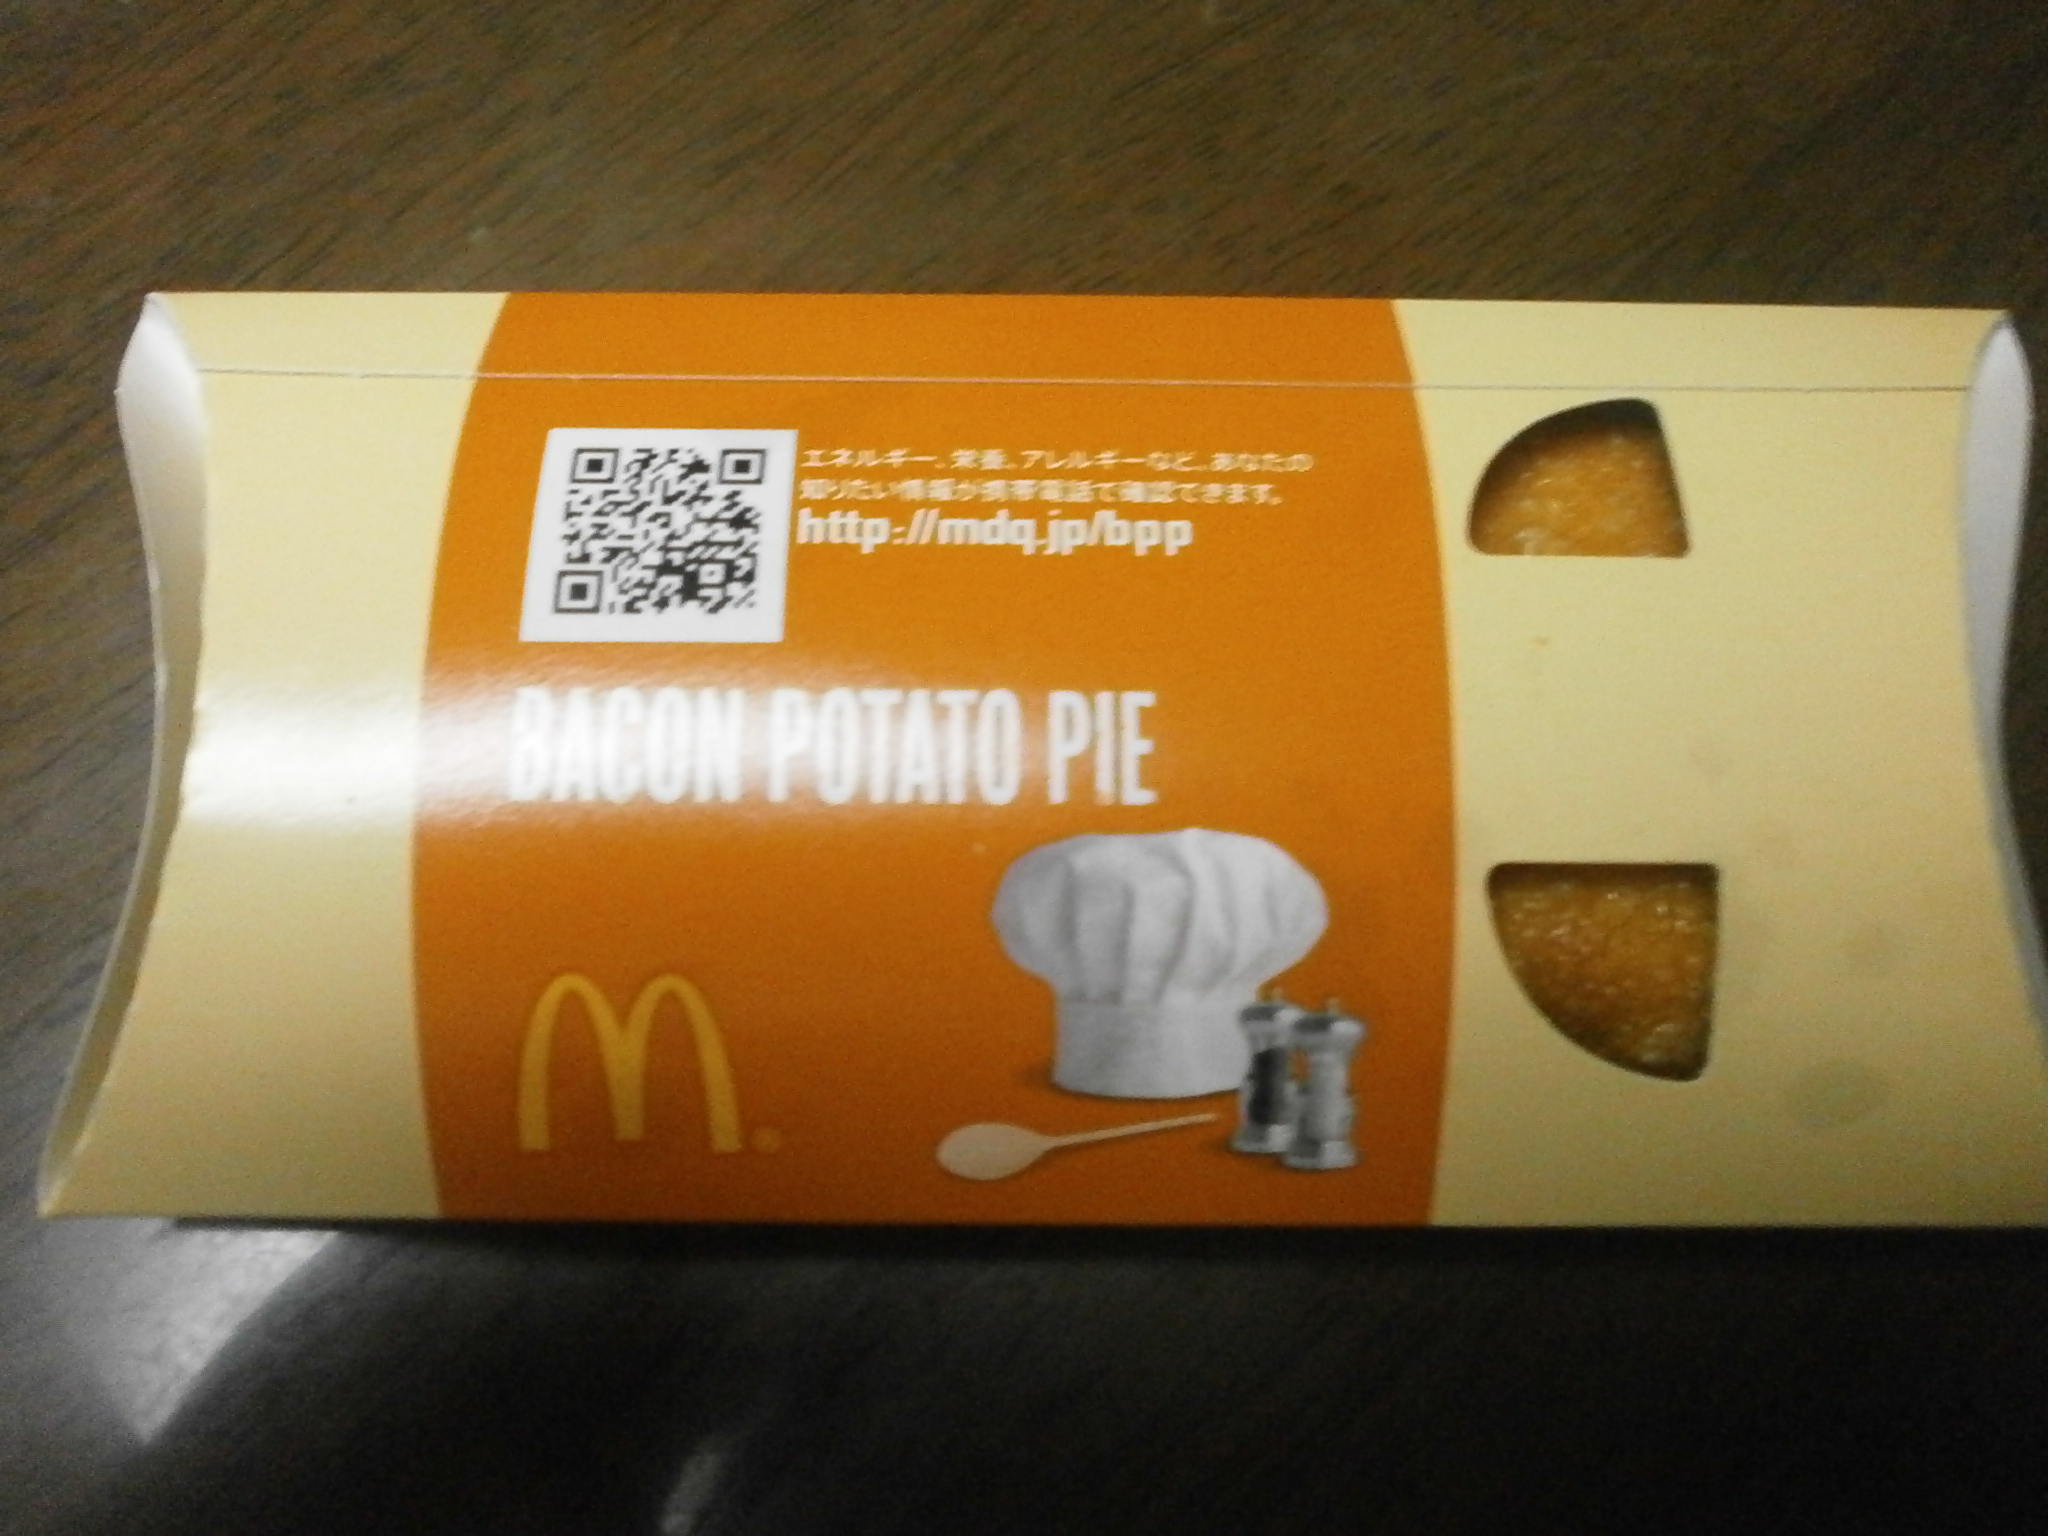 Torta di patate pancetta (McDonald)